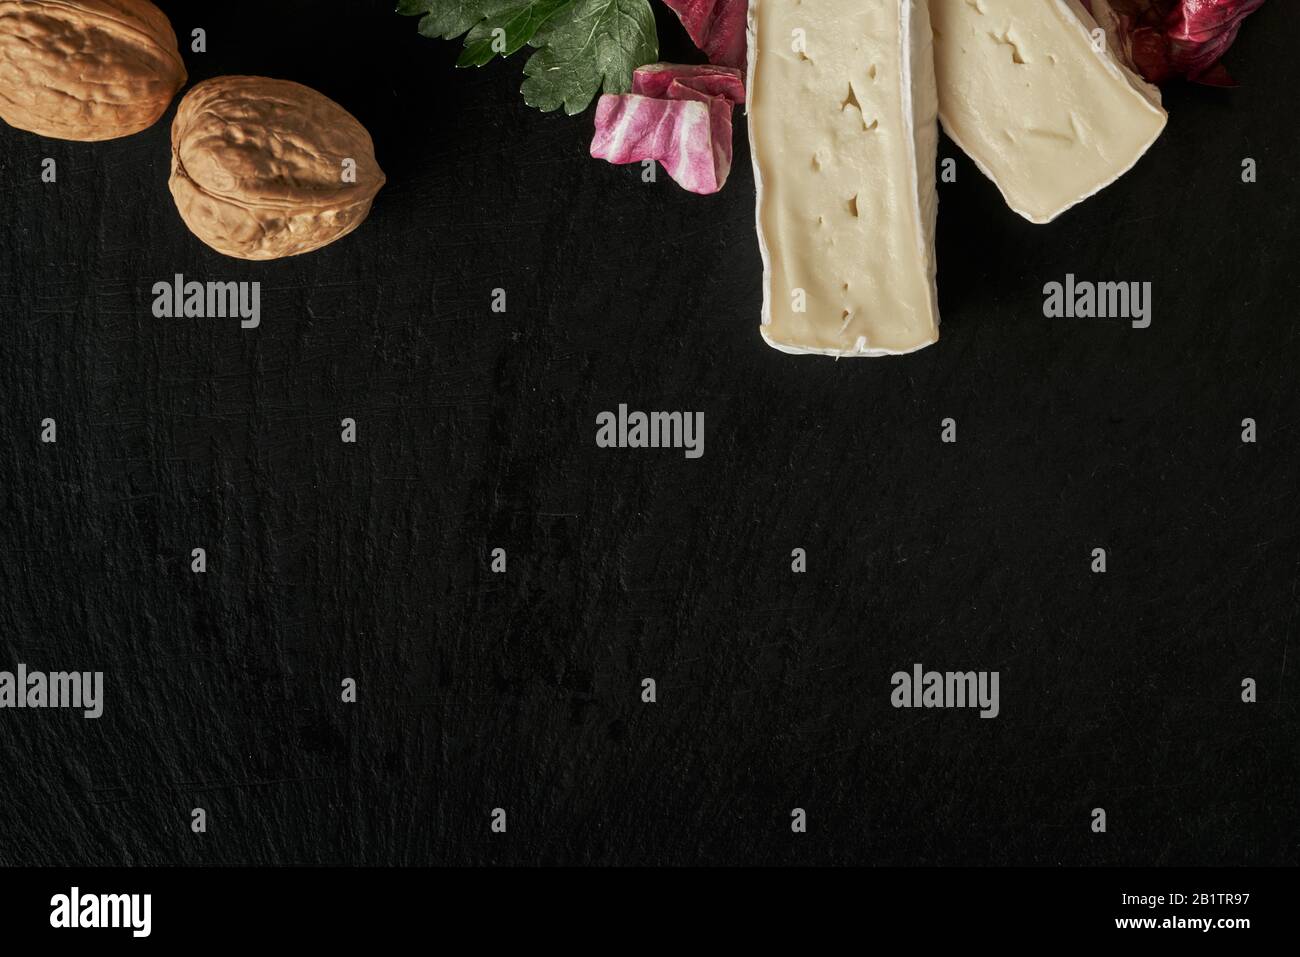 Käsedelikatessen auf schwarzer Steinpultoberfläche. Camembert oder brie kreisen in braunem Kraftpapier, das mit Basilikum und Kirschtomat verziert ist Stockfoto